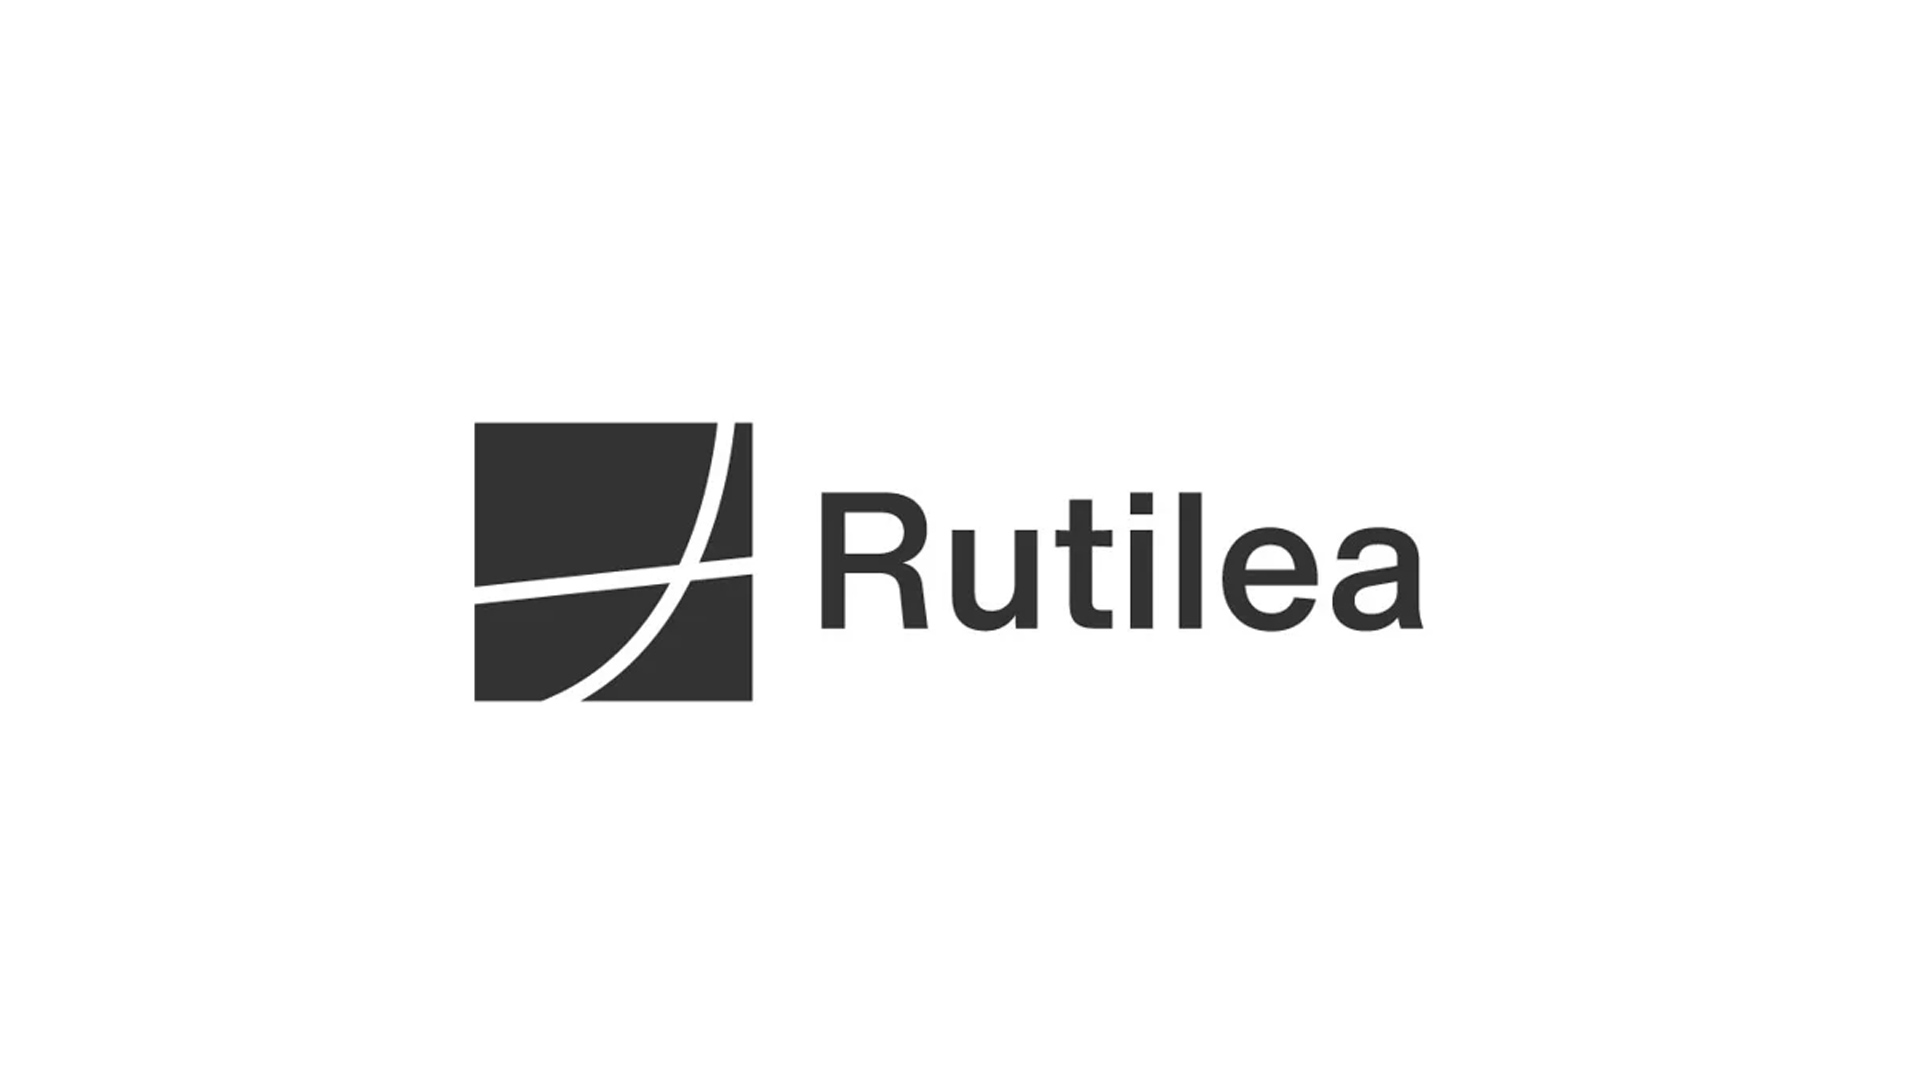 株式会社RUTILEA、シリーズCのファイナルクローズにより総額約6億円の資金調達ー累積資金調達額は約12億円に